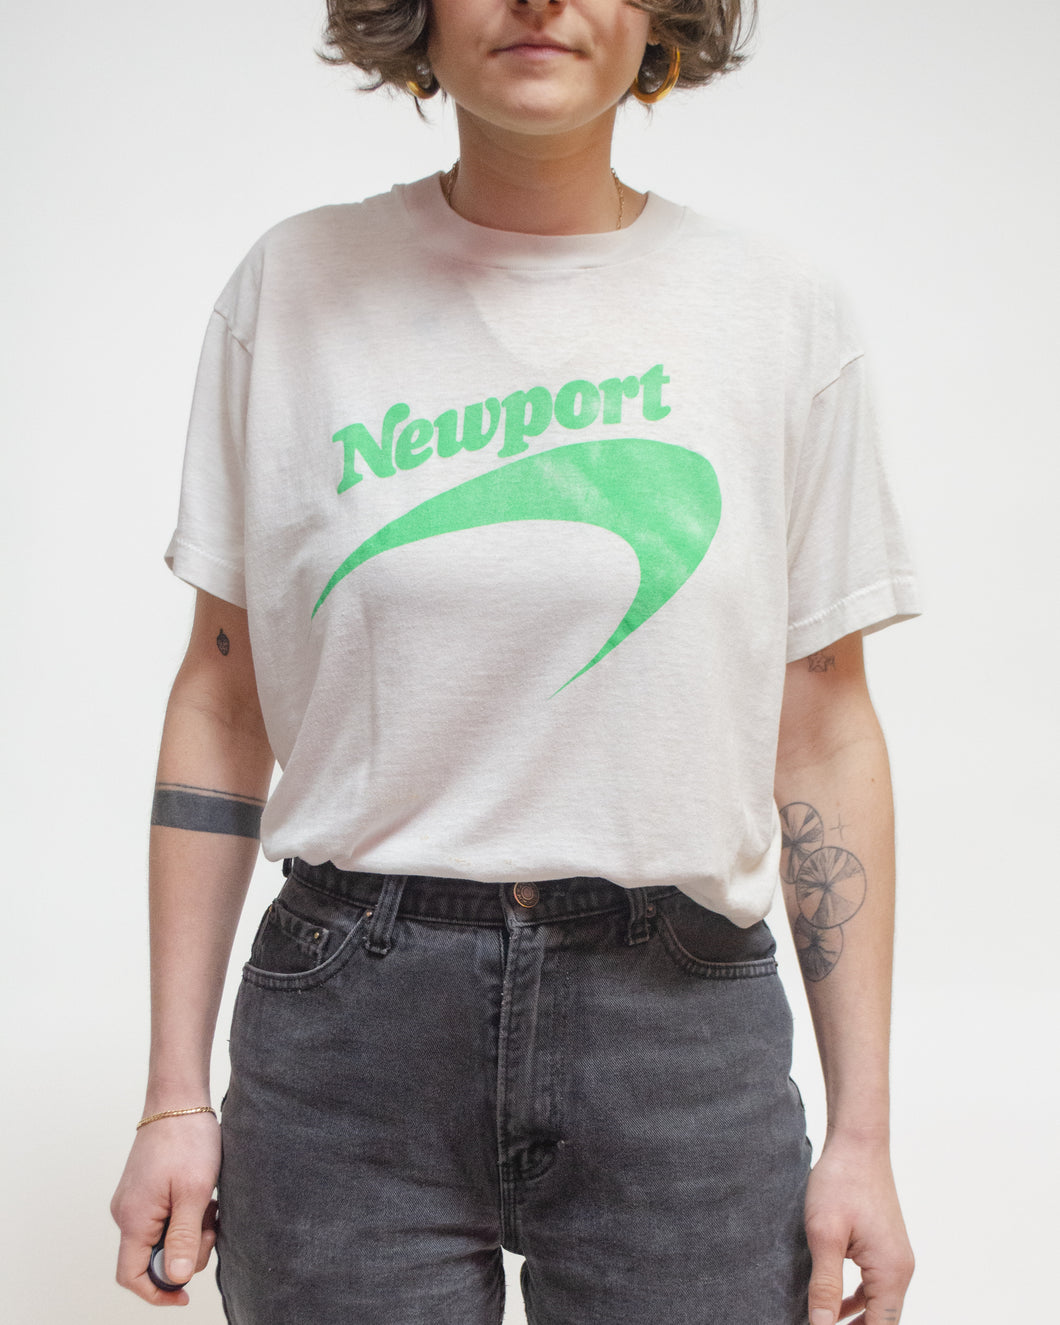 Newport promo t-shirt